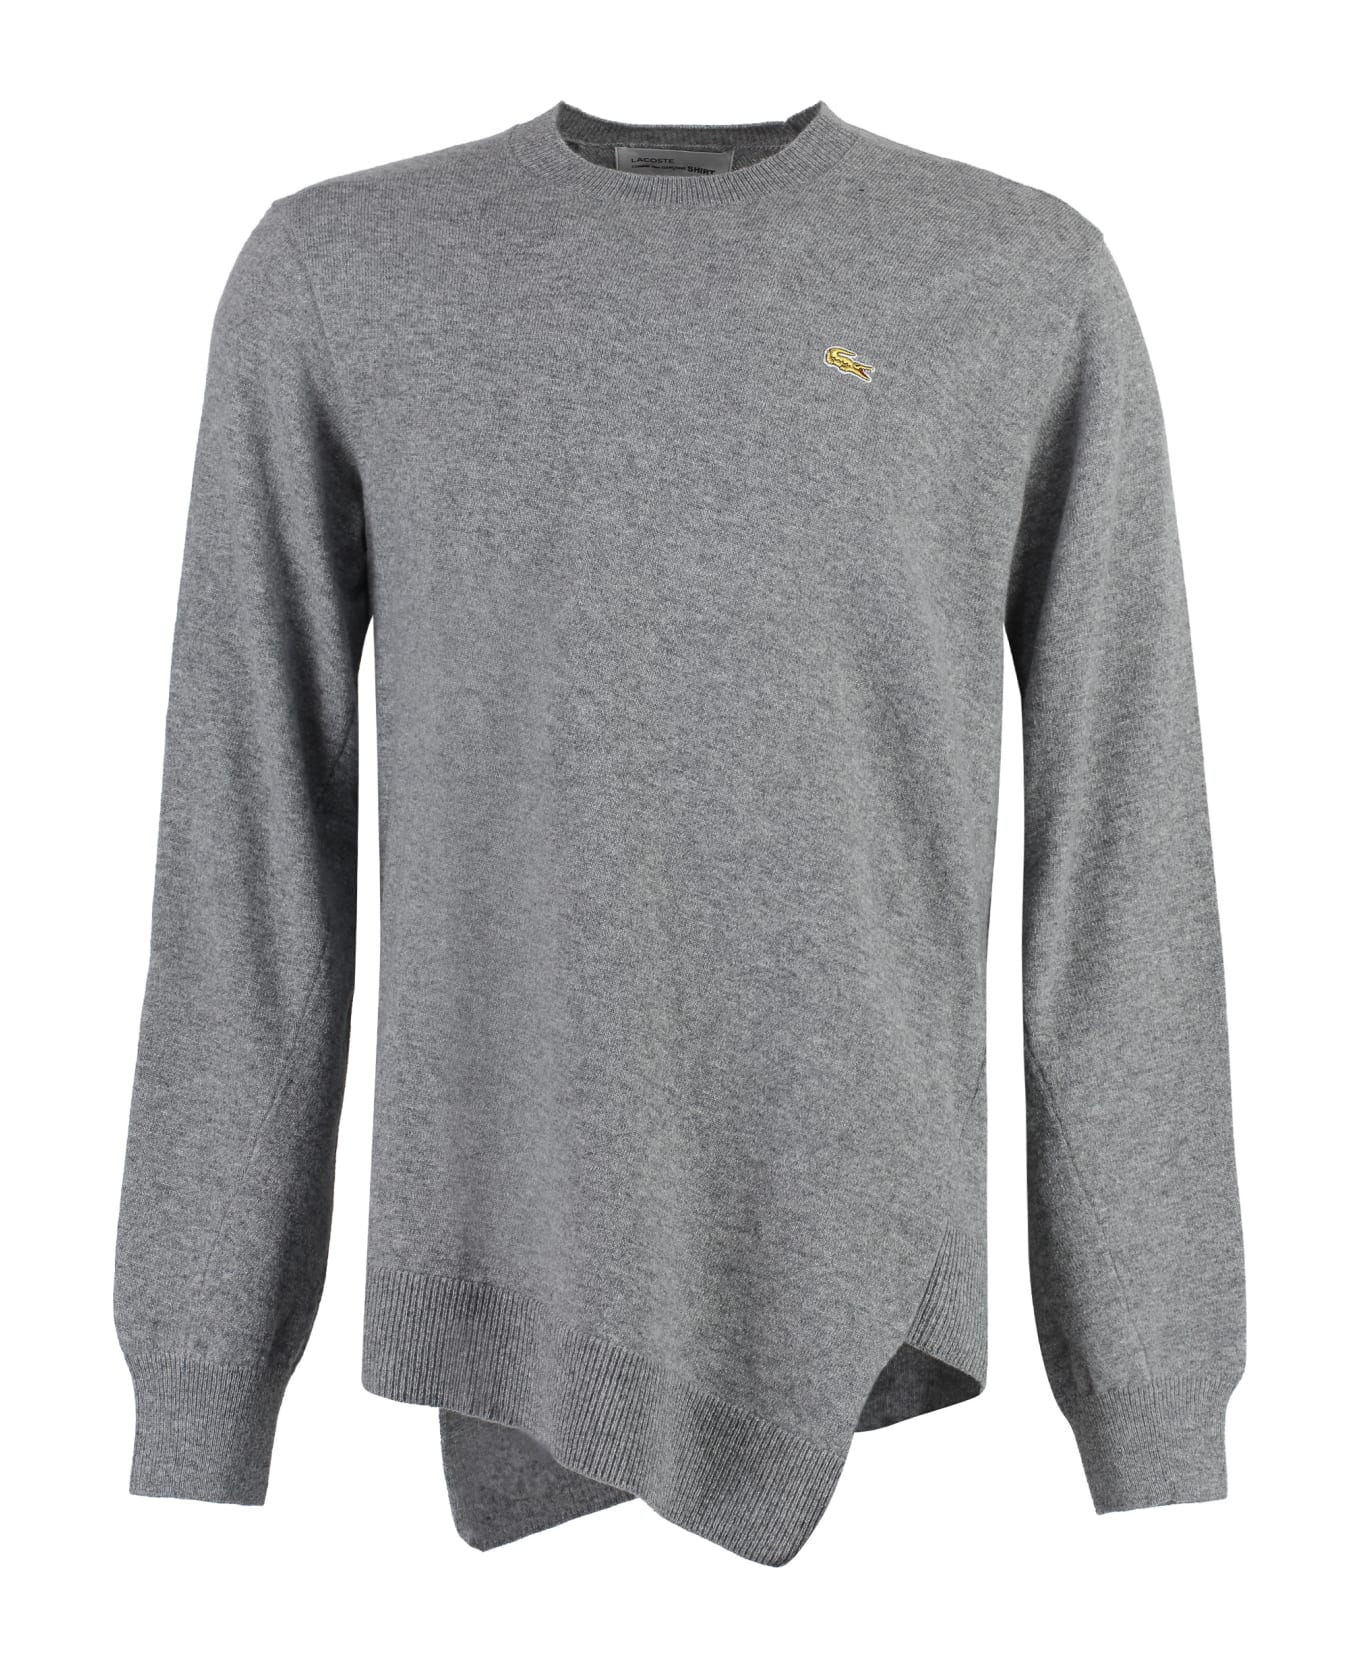 Comme des Garçons Shirt Lacoste X Comme Des Garçons - Crew-neck Wool Sweater - grey